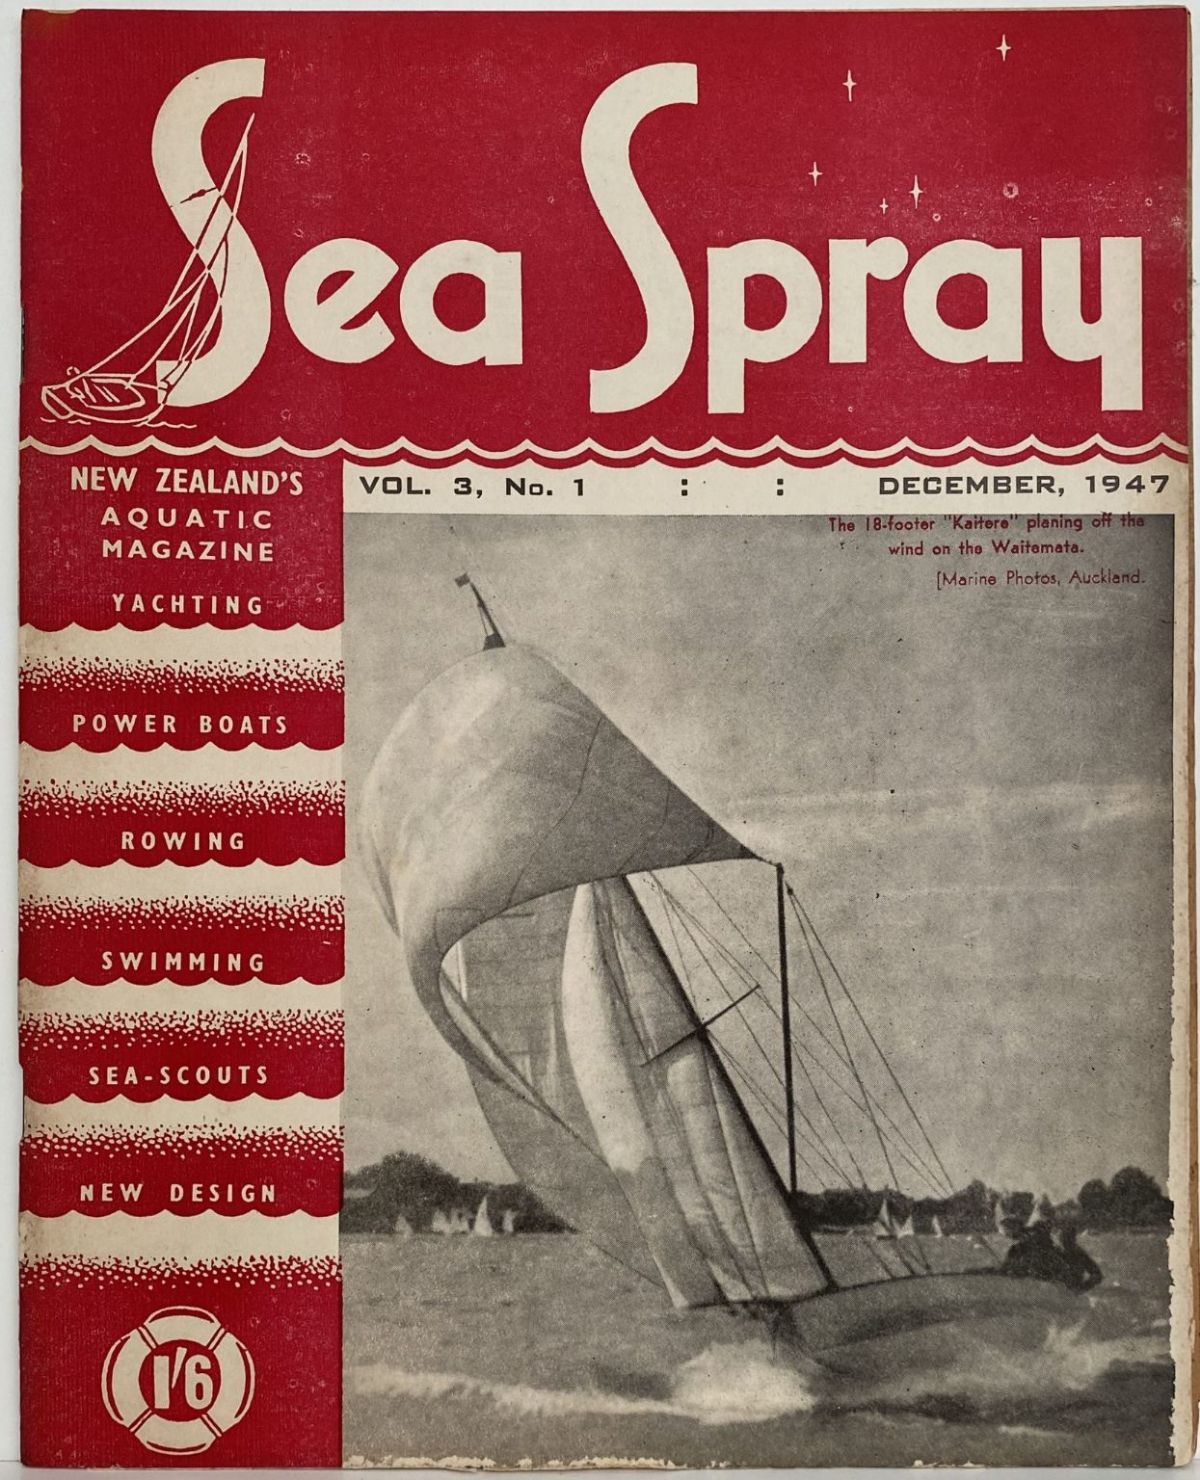 VINTAGE MAGAZINE: Sea Spray - Vol. 3, No. 1 - December 1947